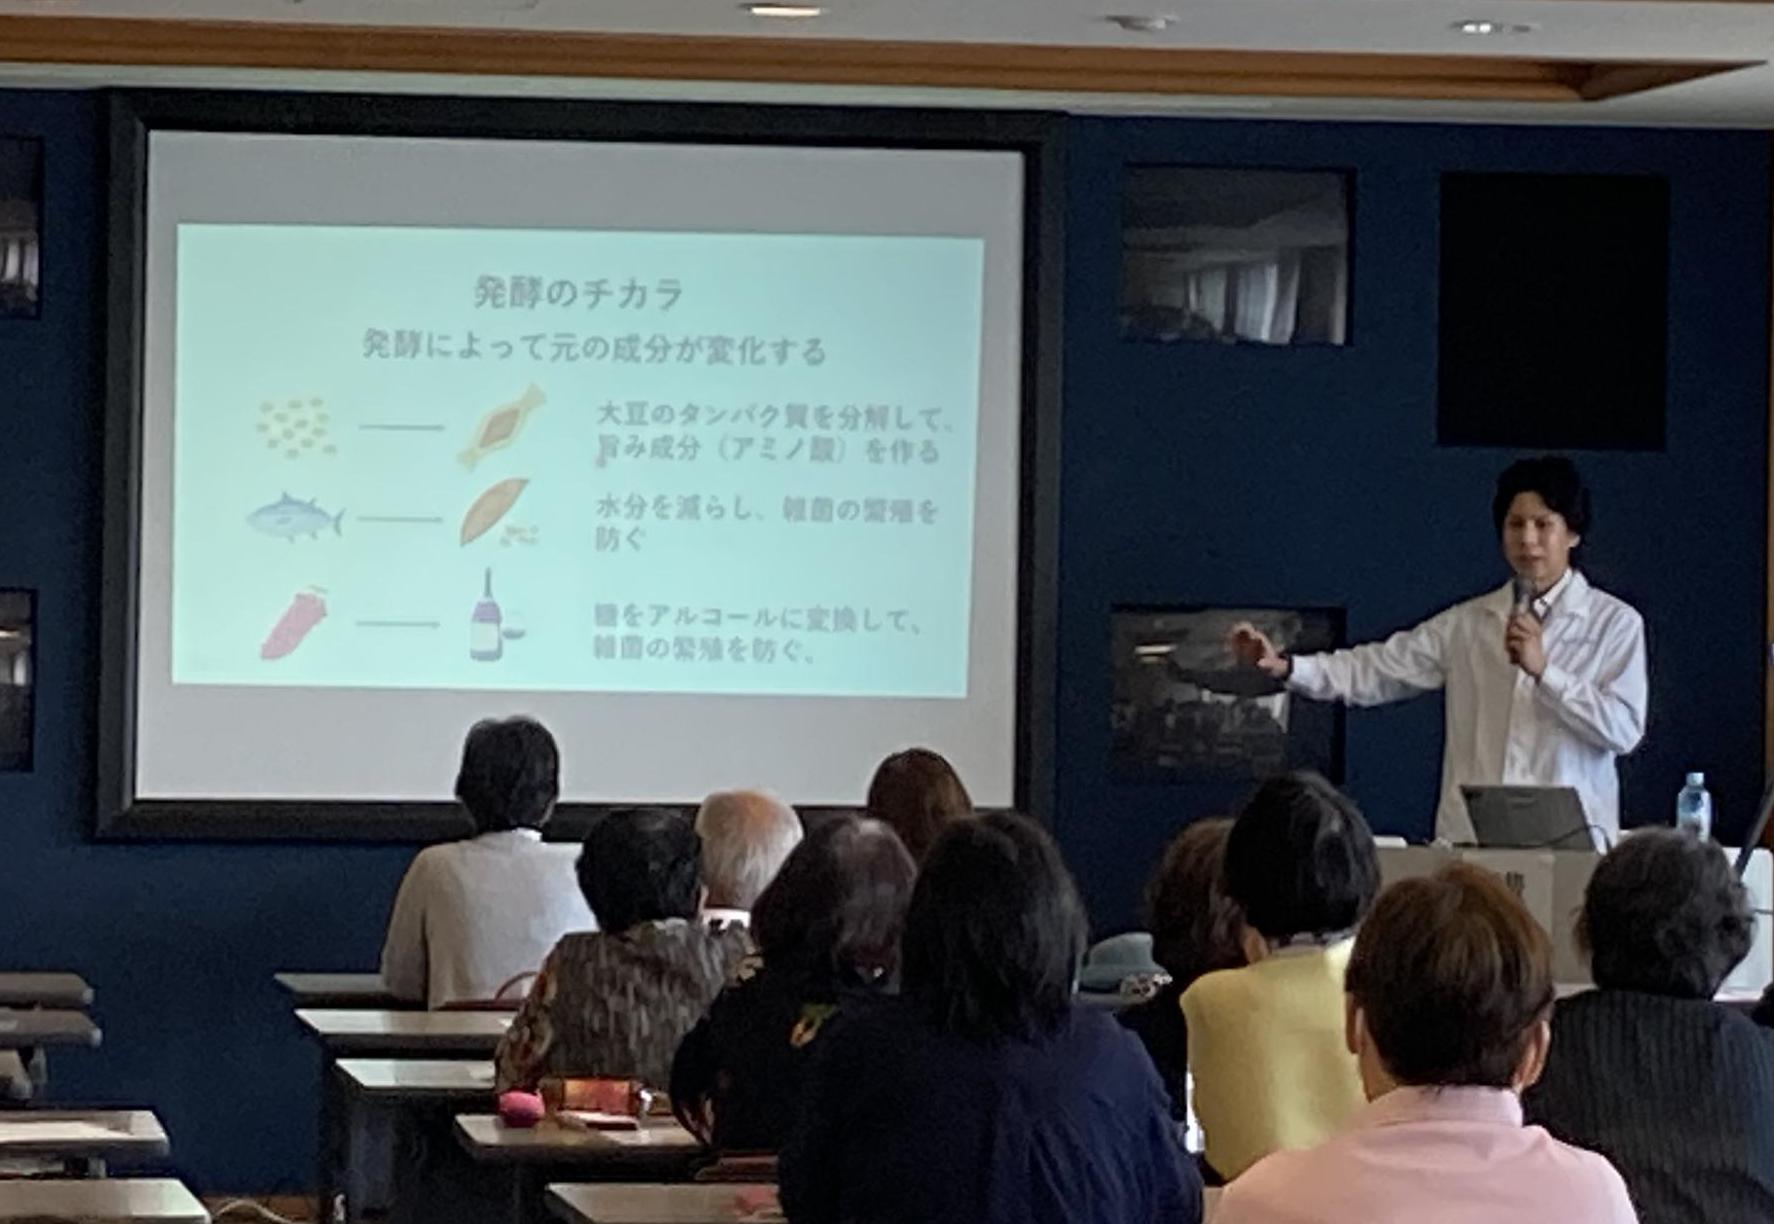 サントリー研究員の金川さんが「発酵のチカラ」と表示されたスライドの説明をしている写真